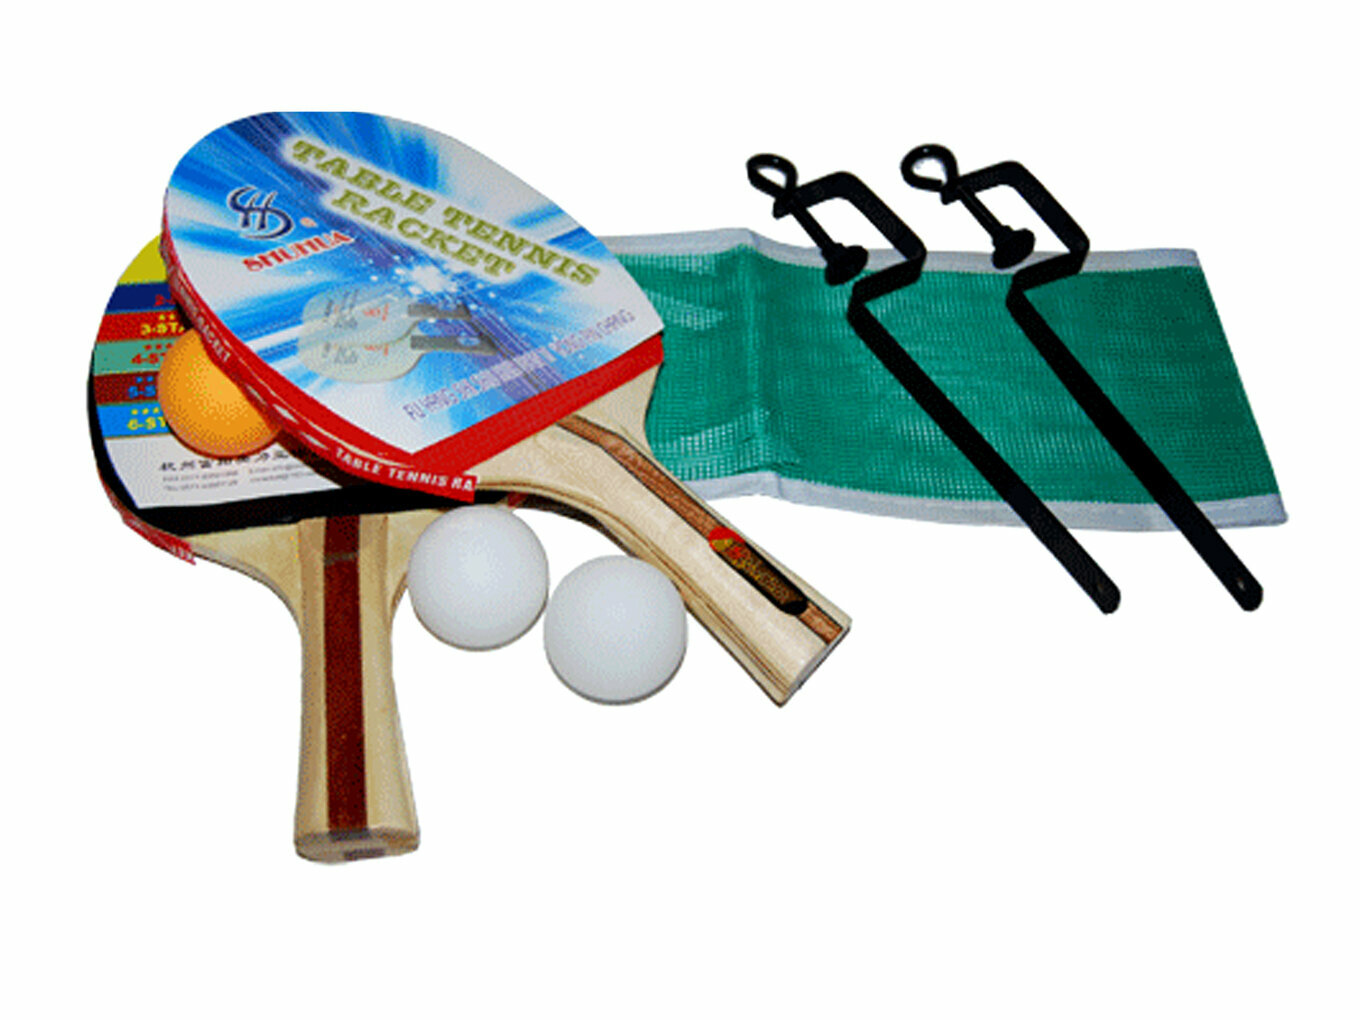 Набор для настольного тенниса (2 ракетки + 3 мячика + сетка + стойка) 014